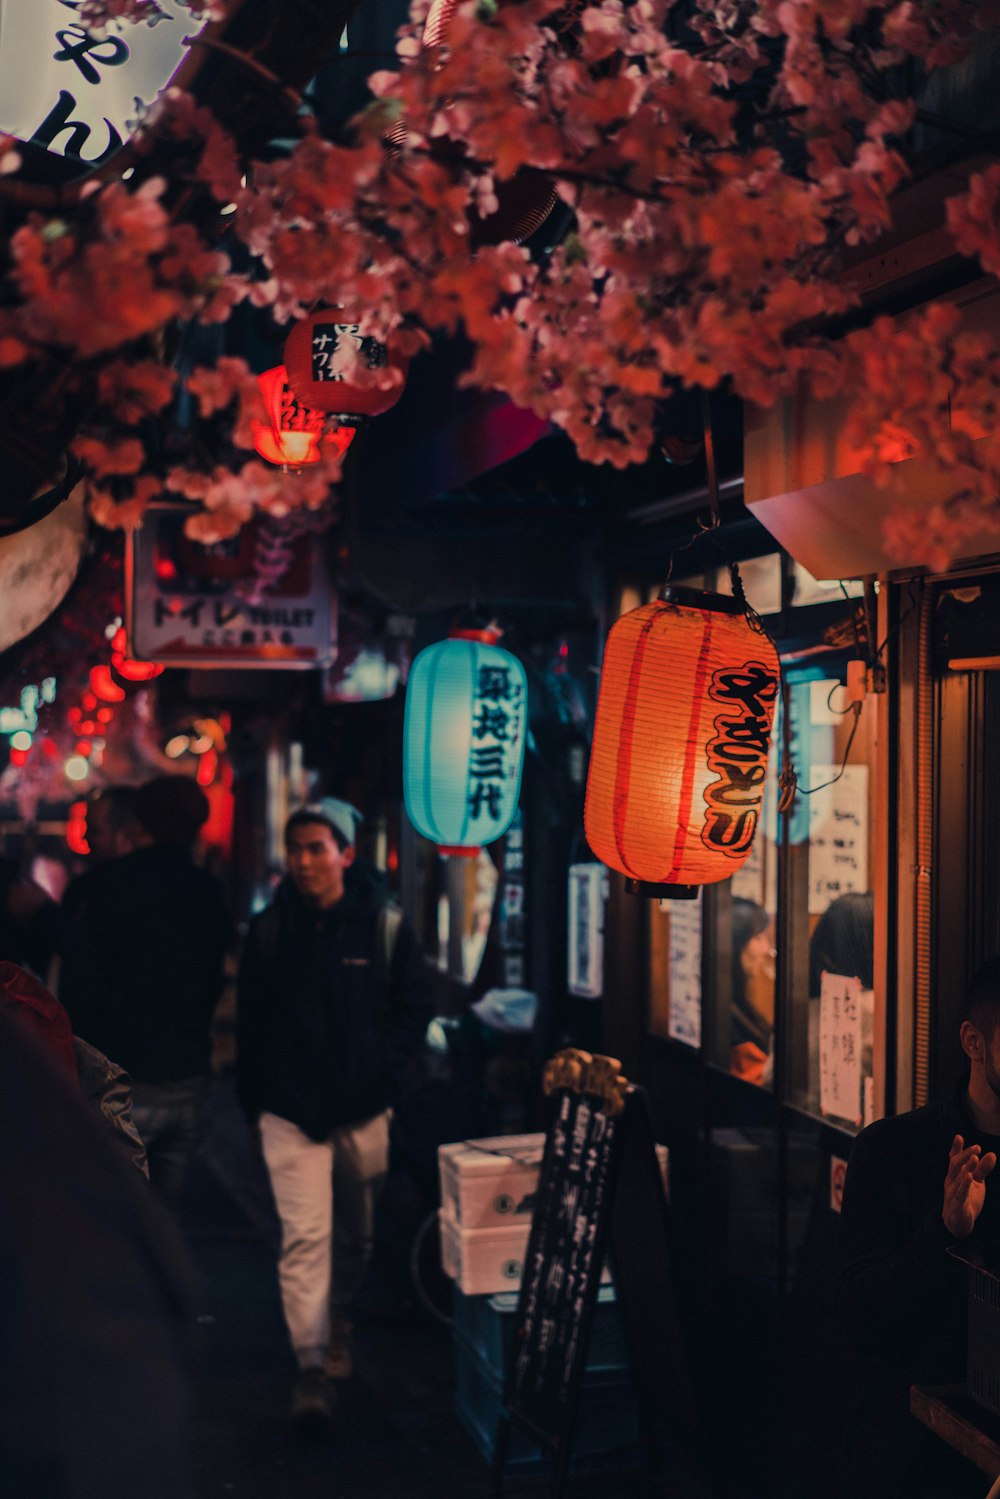 personnes debout près d’une lanterne en papier rouge pendant la nuit